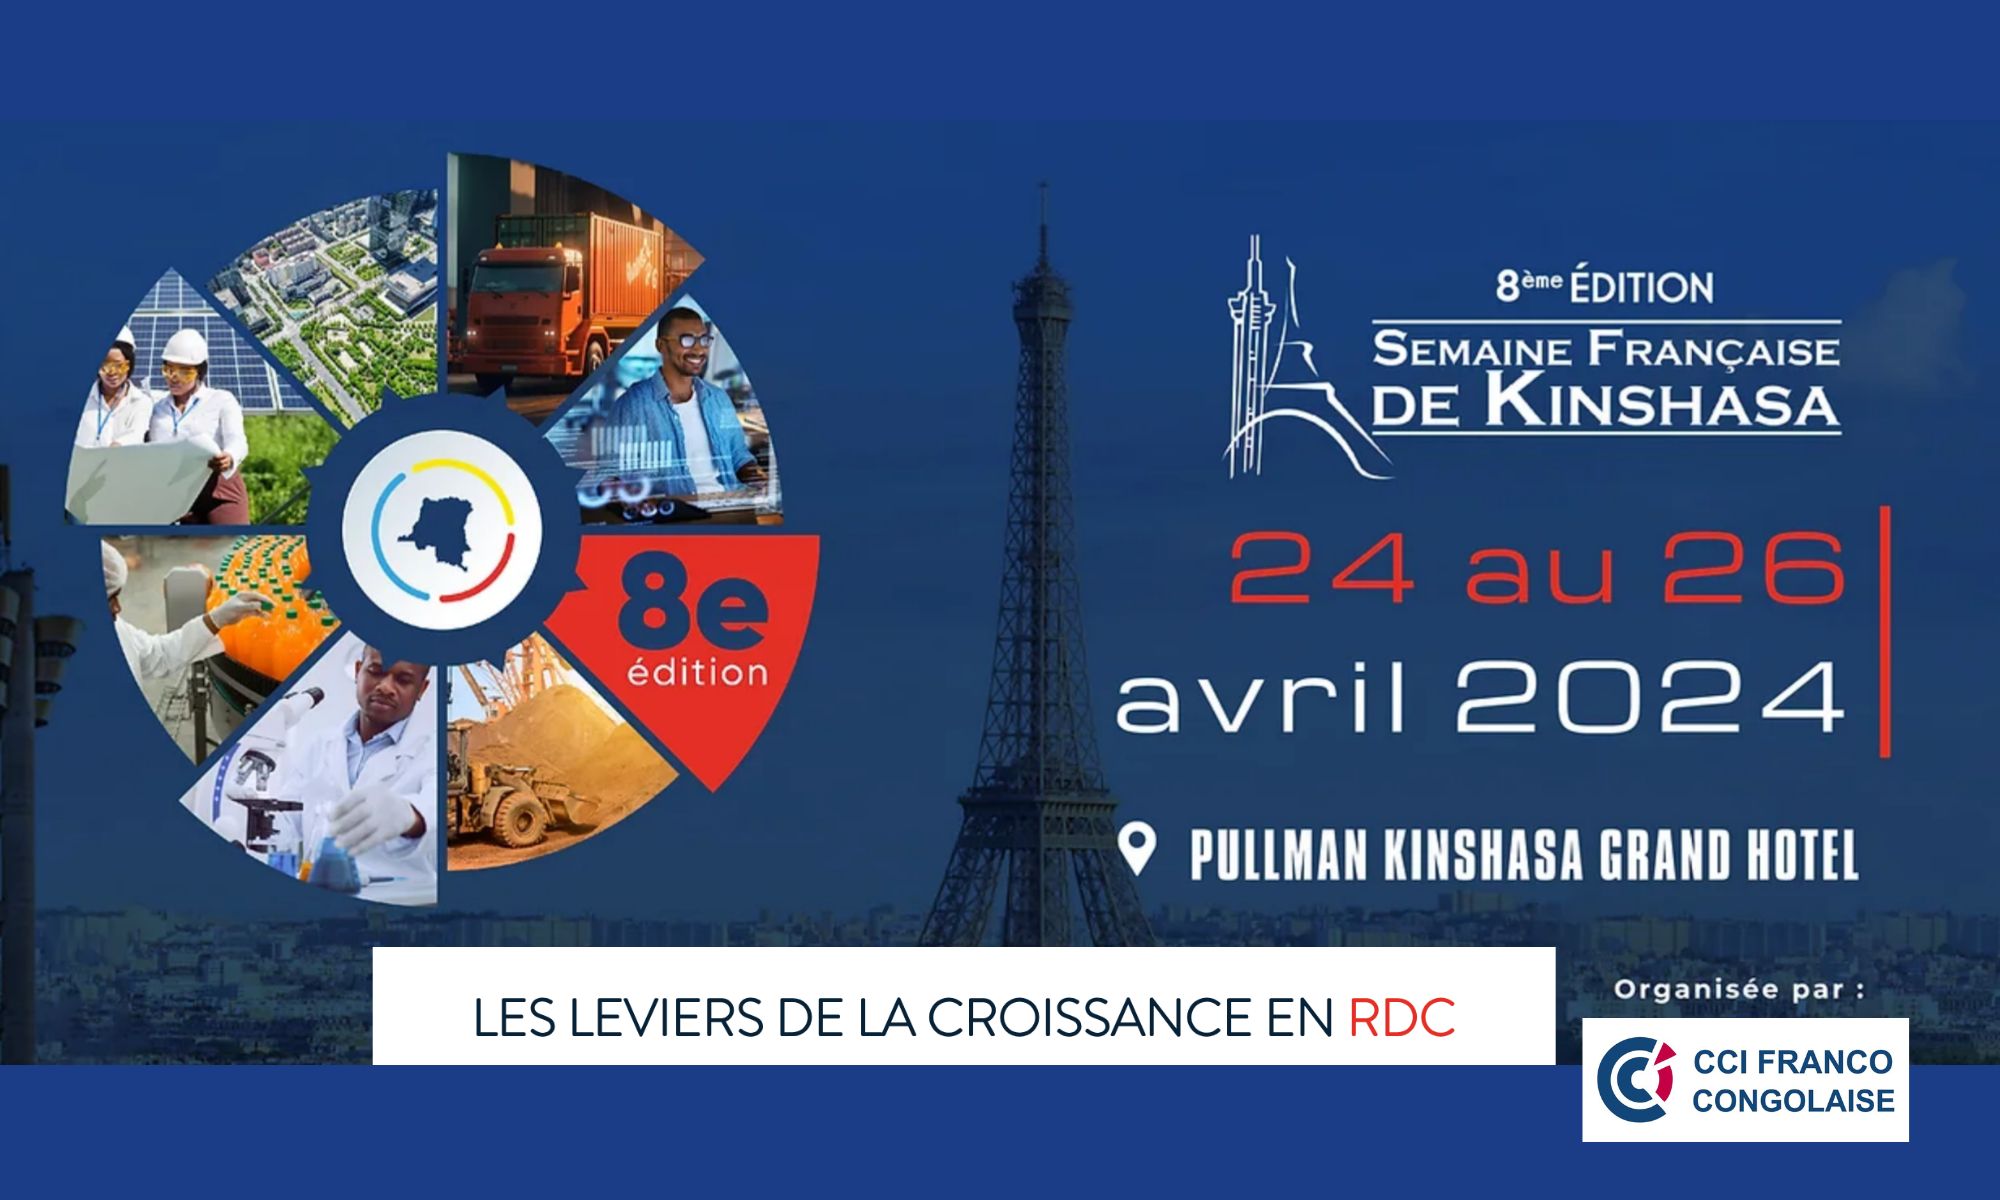 La Semaine française à Kinshasa aura lieu du 24 au 26 avril 2024